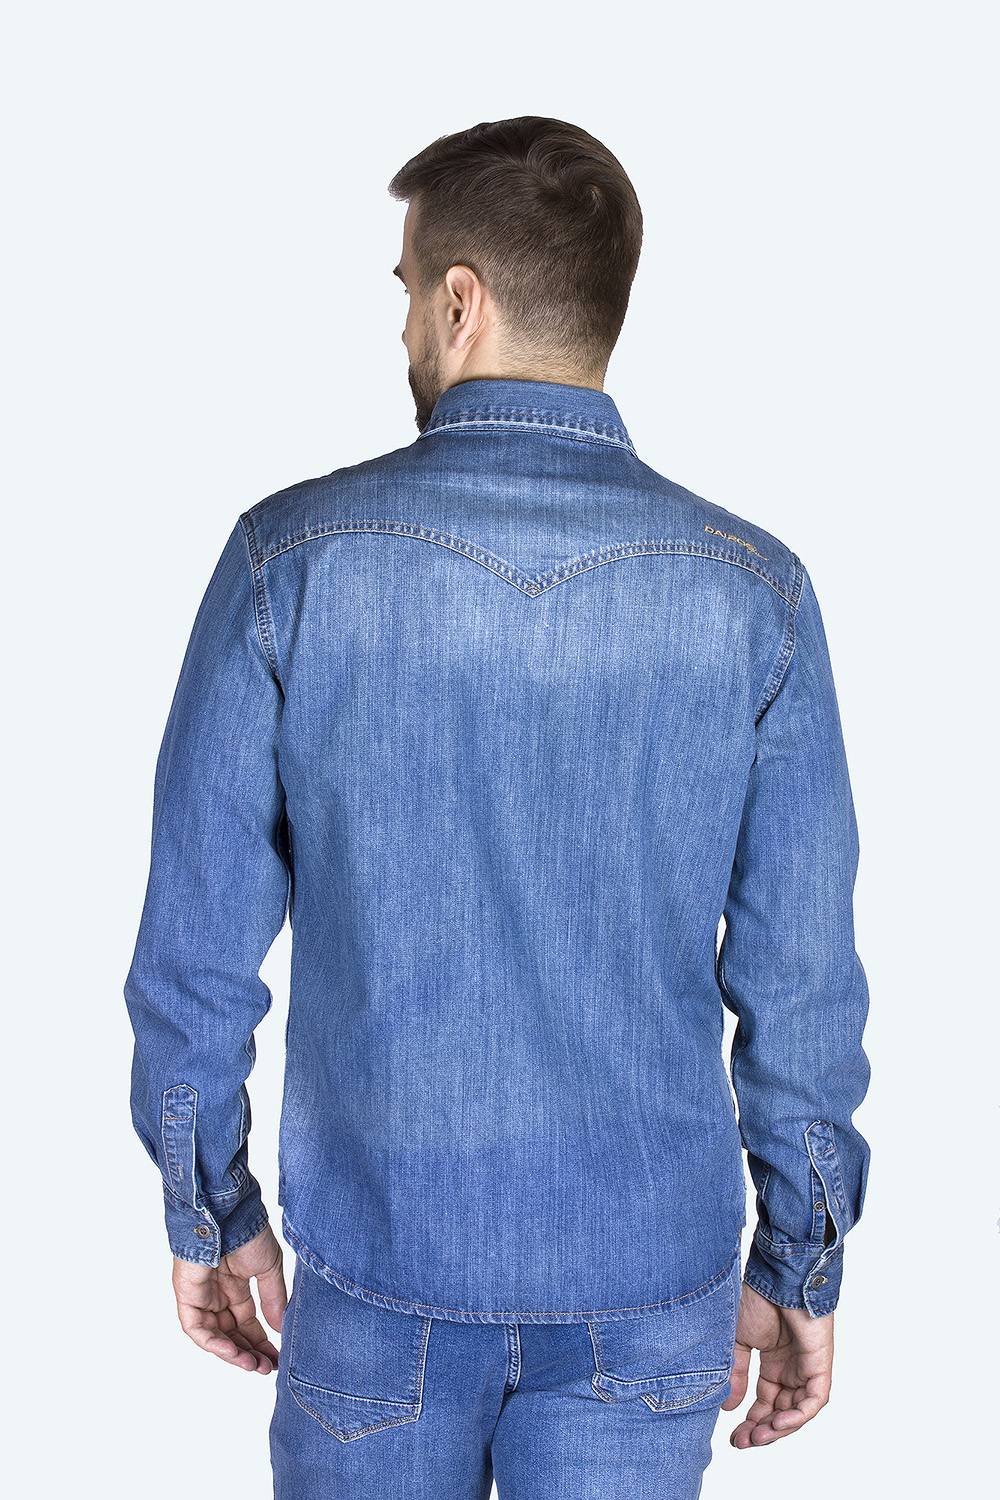 Джинсовая рубашка мужская Dairos GD5080100 синяя L